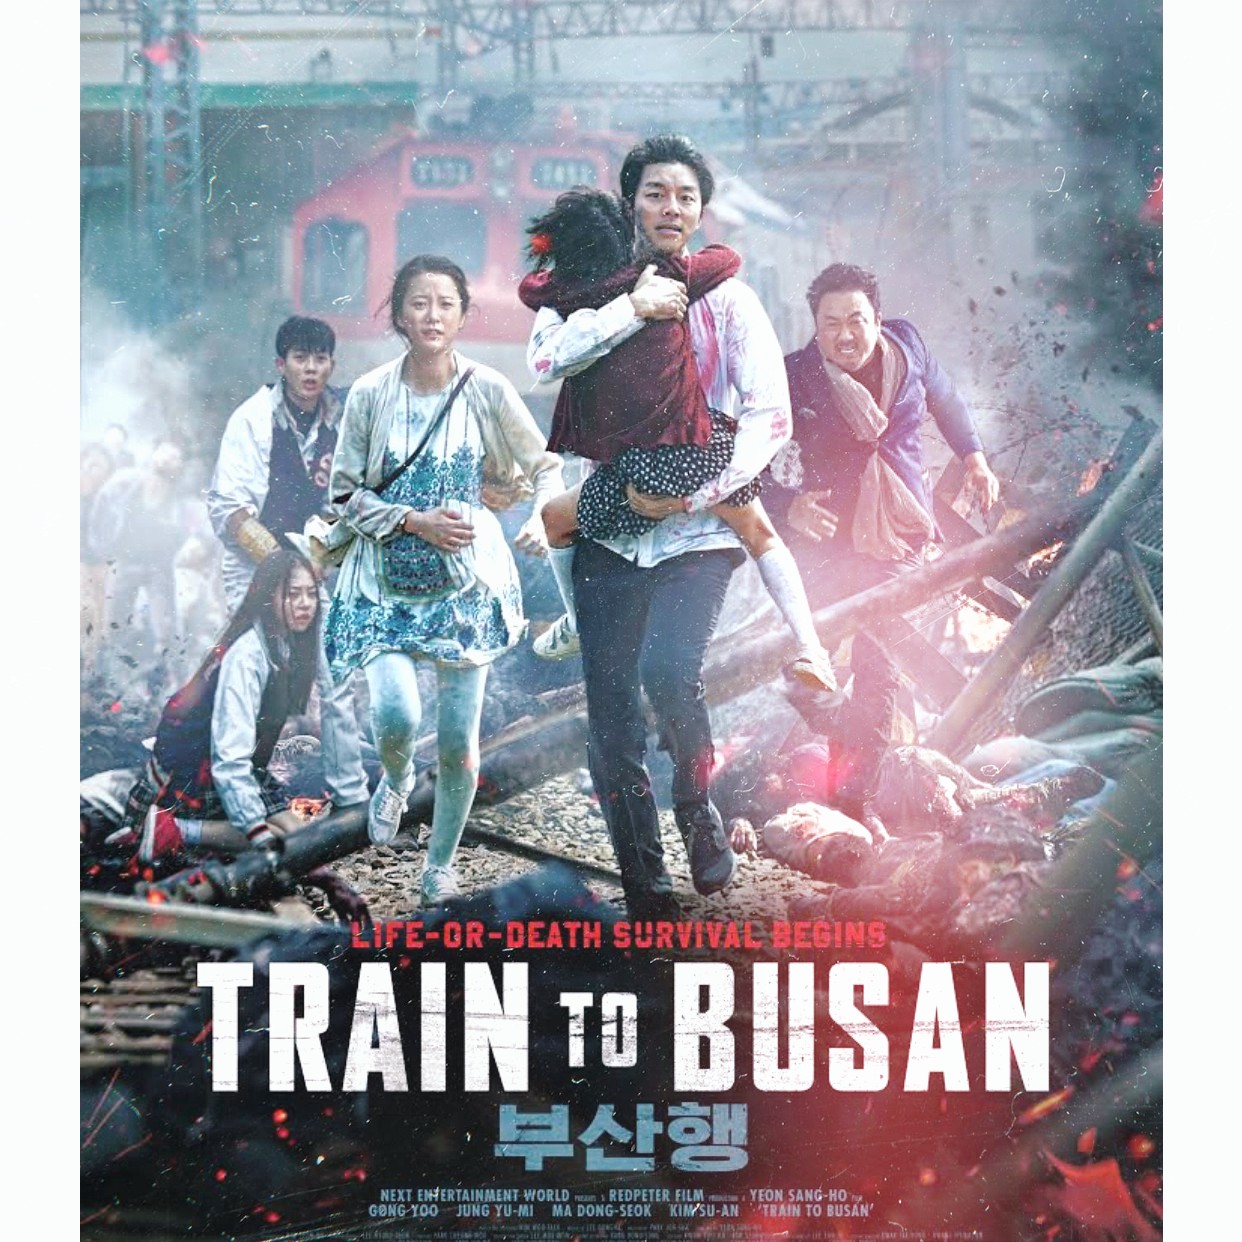 Αν θεωρείς τον Νίγκαν badass, περίμενε μέχρι να δεις τον zombie-kickass Dong-seok Ma στον ρόλο του Sang-hwa...train to busan κριτική Γράφει η Ελίζα Σουφλή.